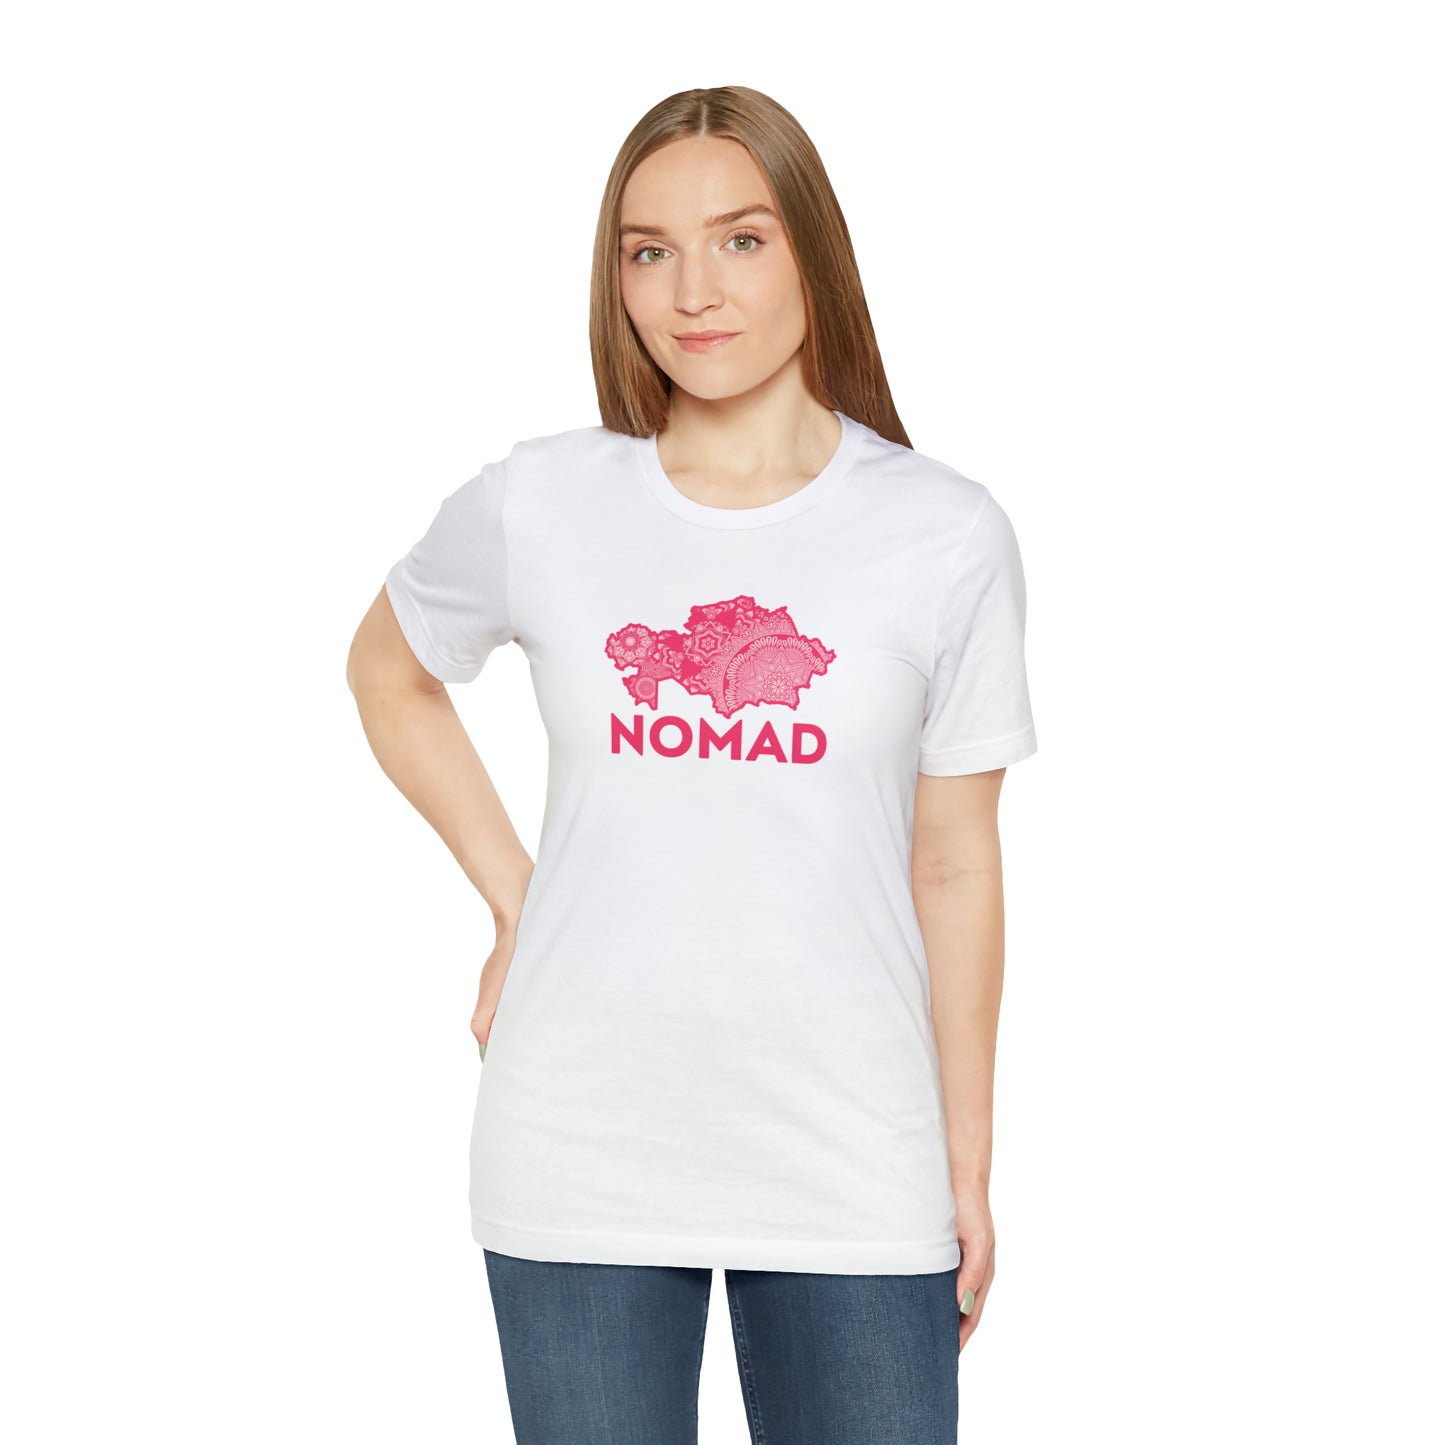 Nomad Unisex T-Shirt